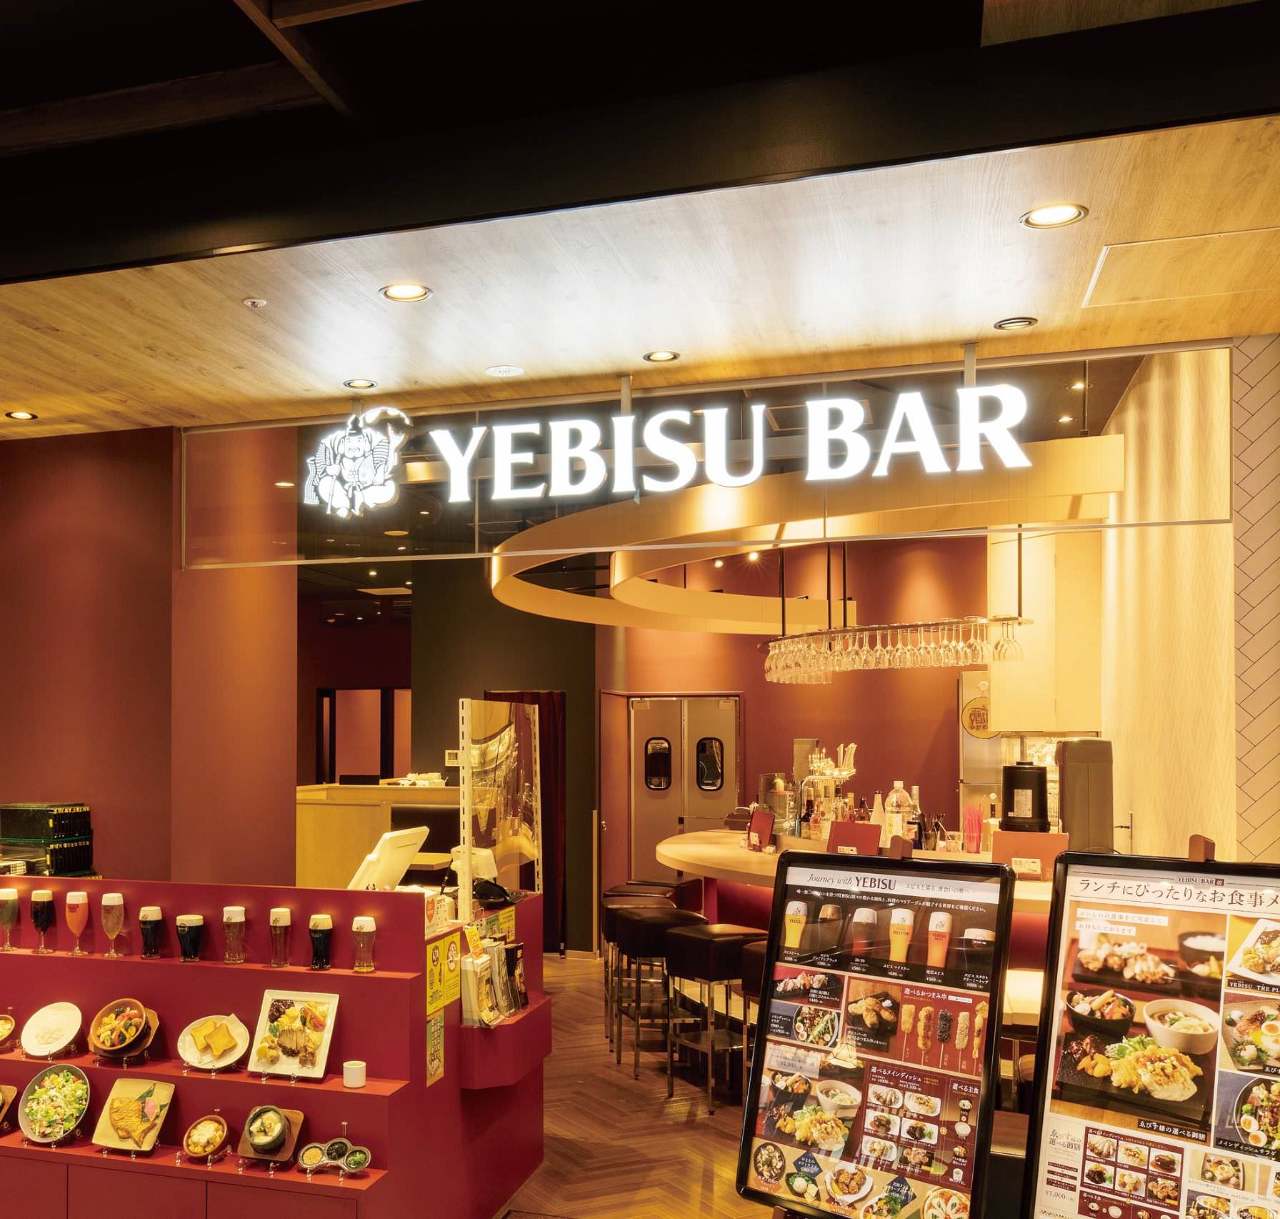 YEBISU BAR サカエチカ店